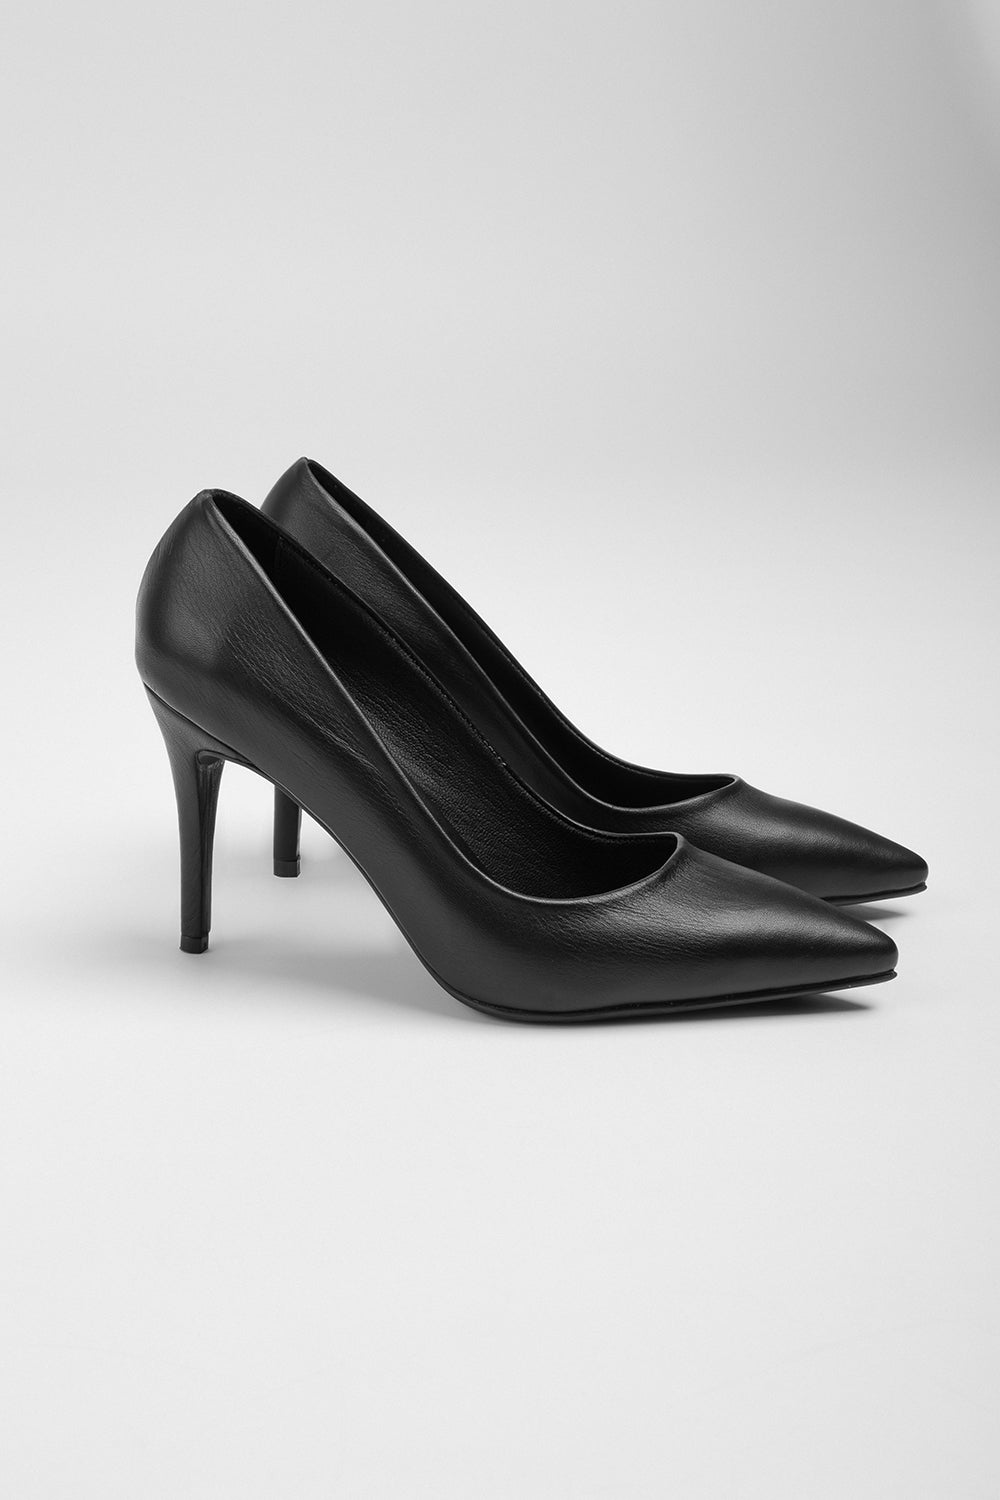 Kadın Siyah Deri Topuklu Ayakkabı 20148